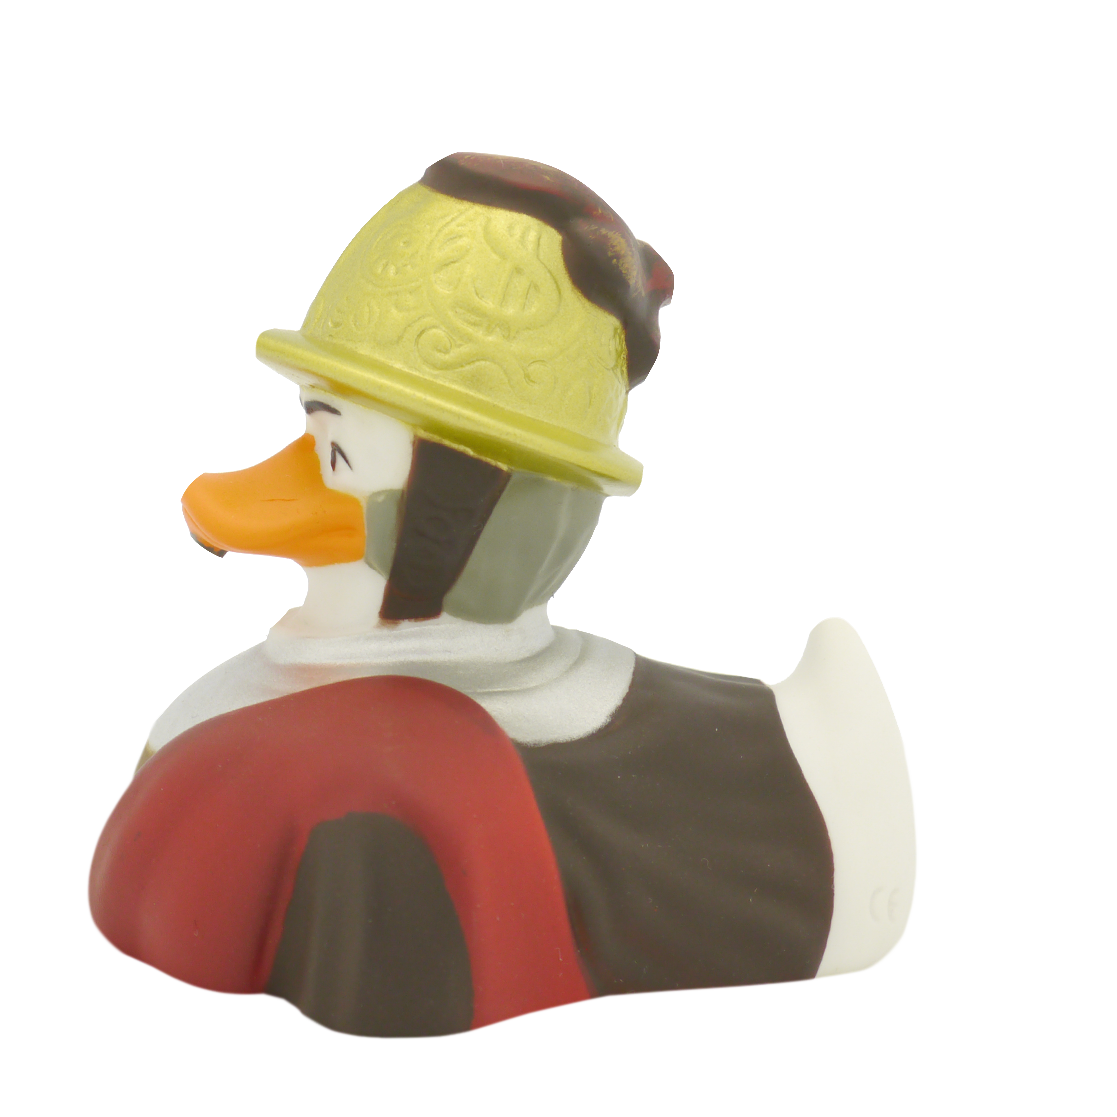 Duck man in the golden helmet